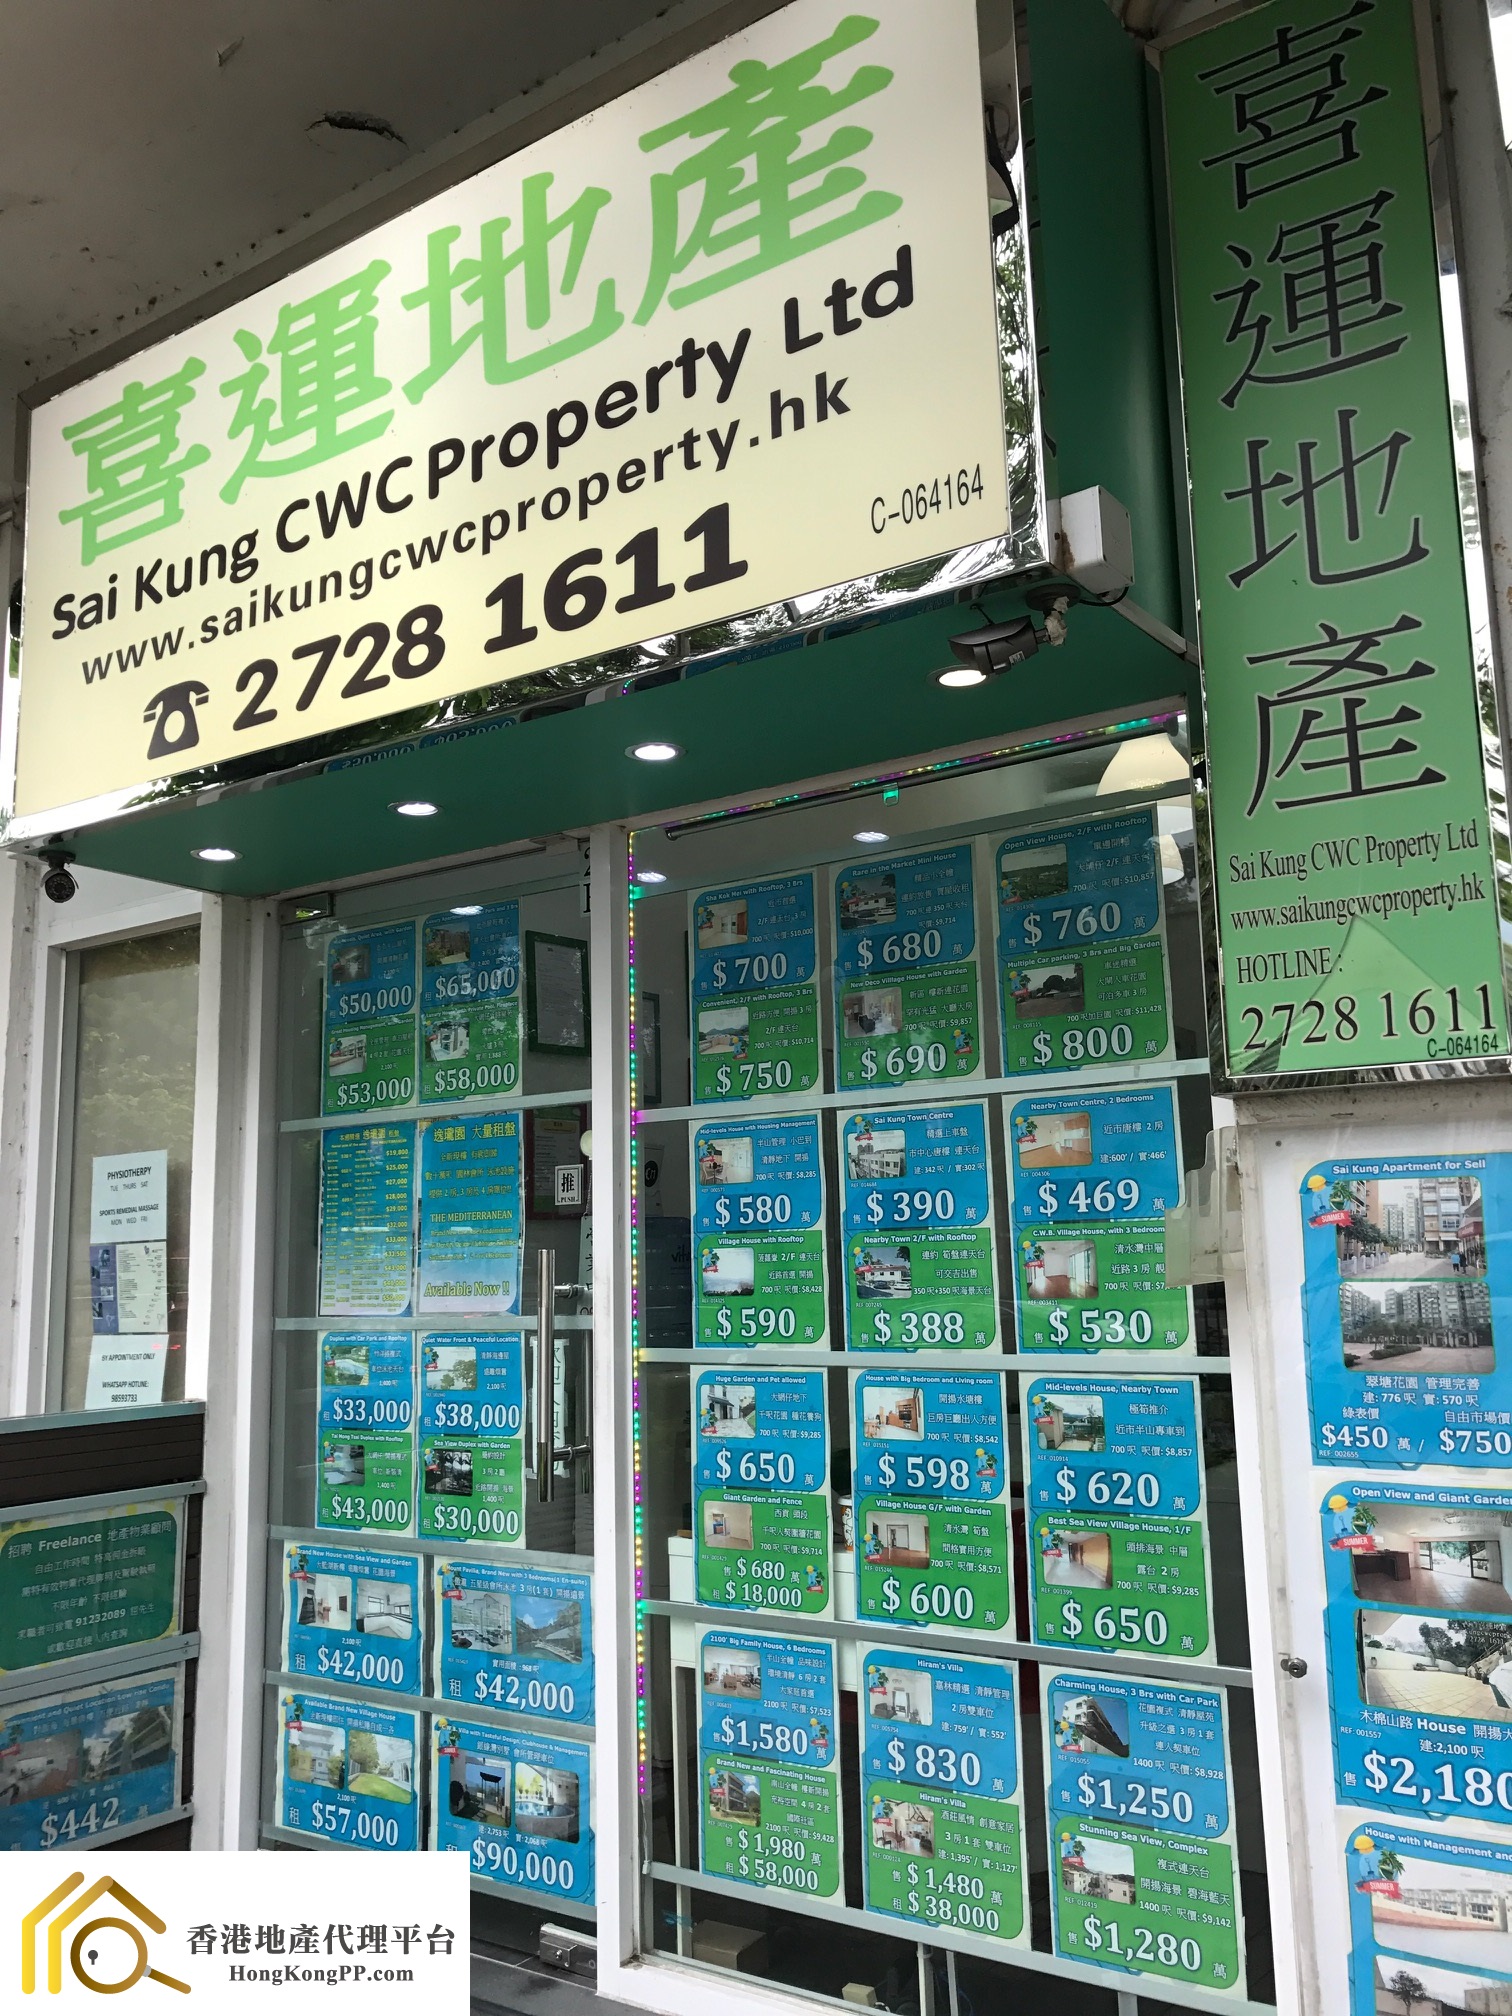 地產代理公司: 西貢喜運地產  Sai Kung CWC Property